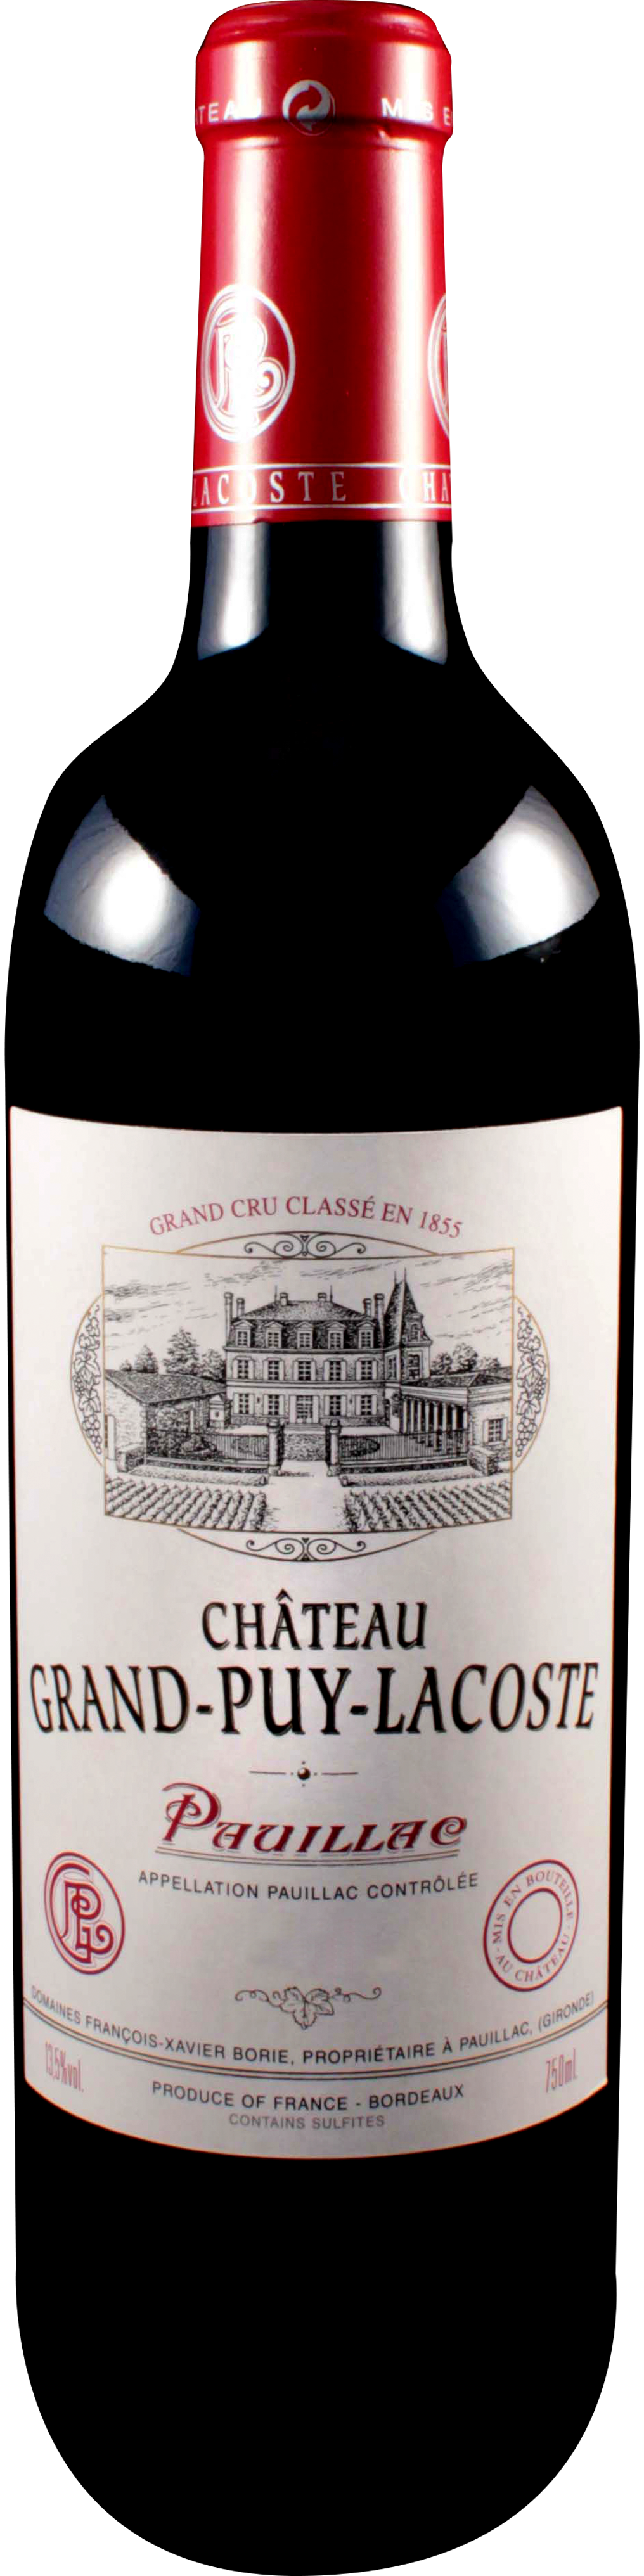 Bottle shot of 2011 Château Grand Puy Lacoste, 5ème Cru Pauillac